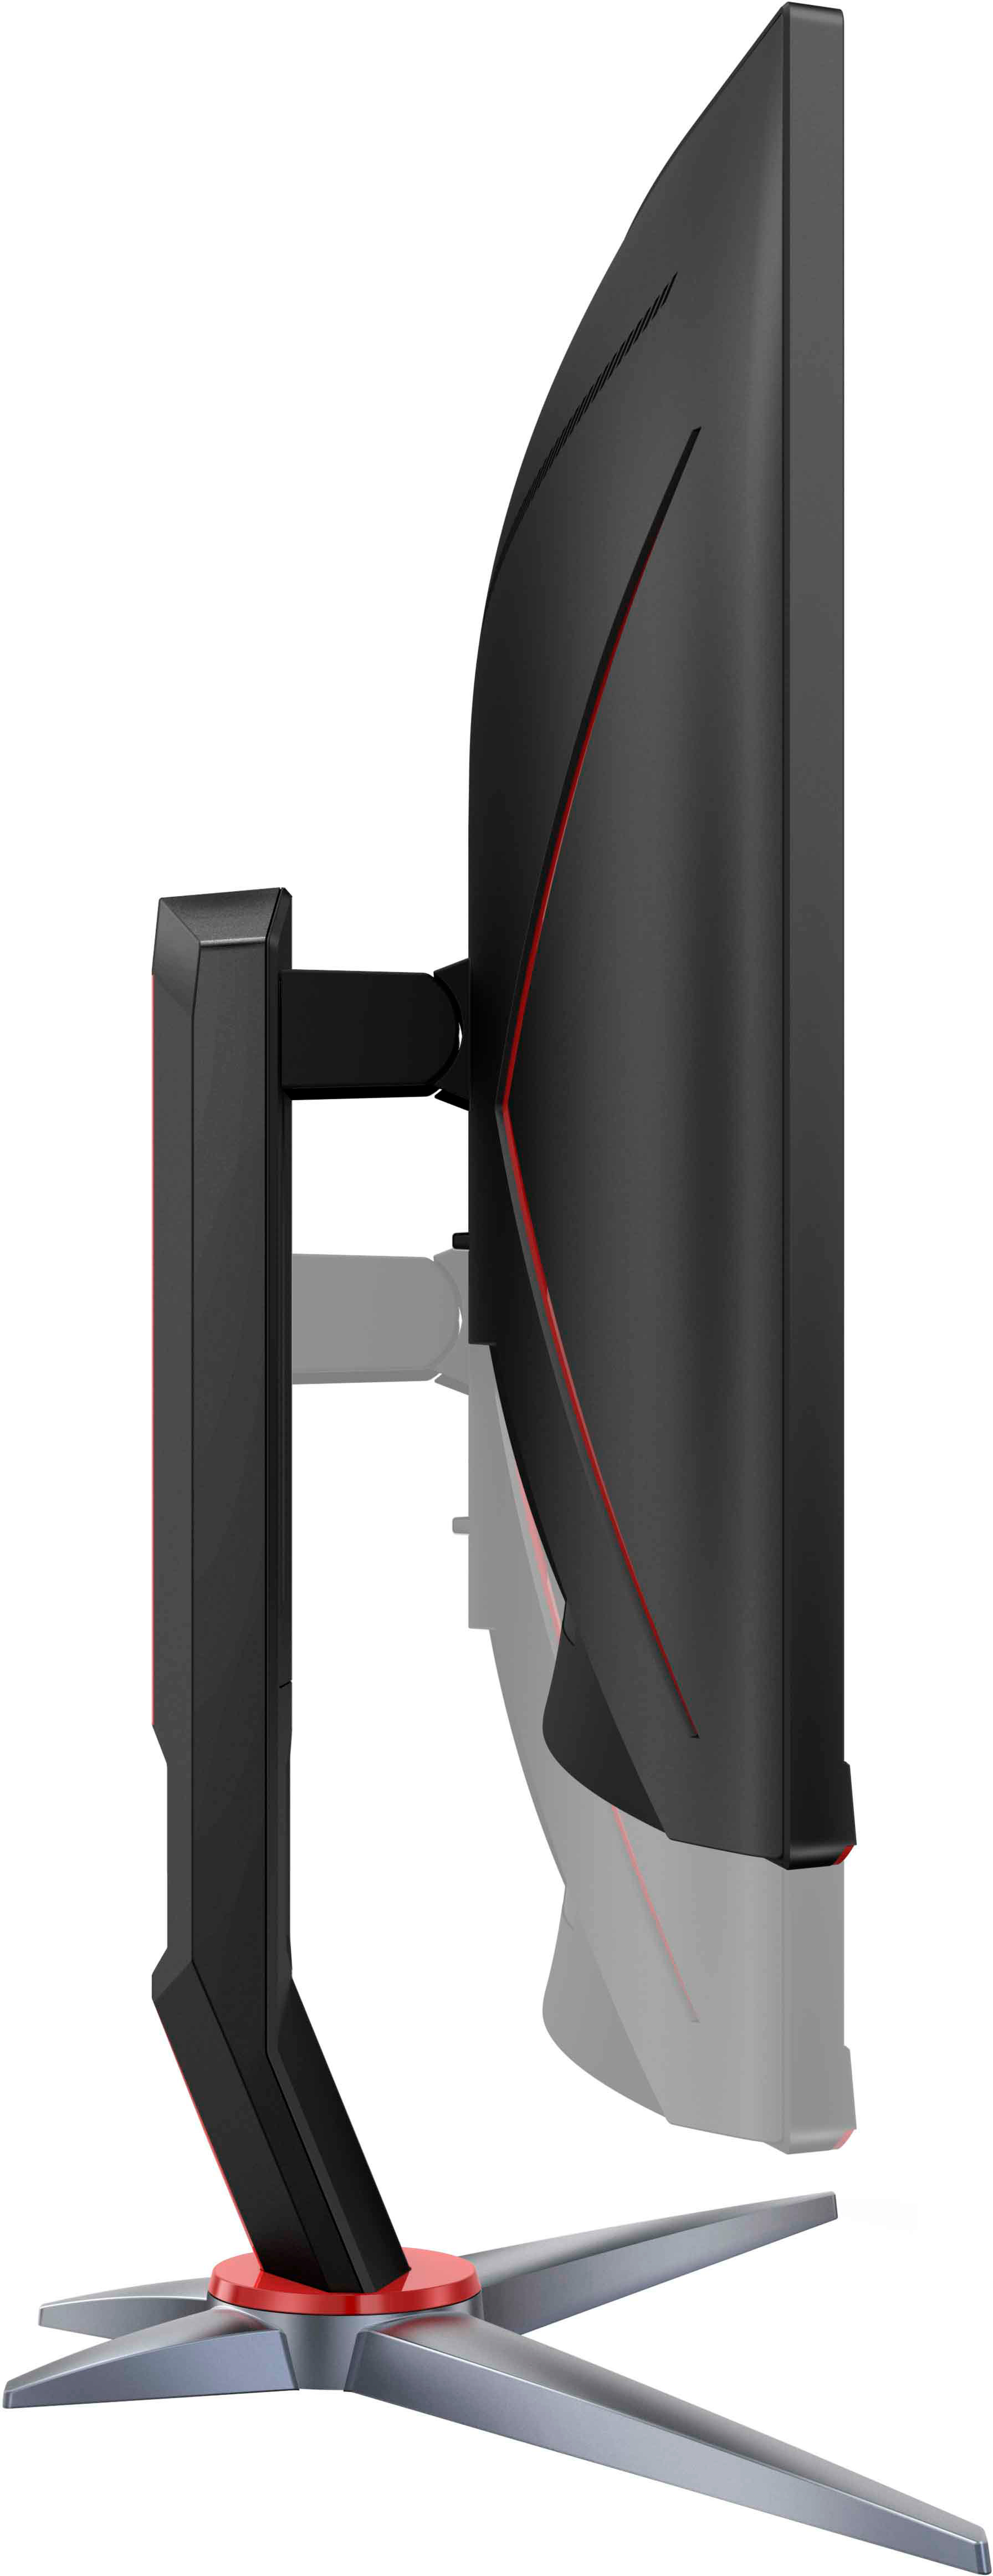 AOC Gaming 27G2 Moniteur de Gaming (FHD, HDMI, DisplayPort, Free-Sync,  Temps de réponse 1 ms, 144 Hz, 1920 x 1080) Noir/Rouge 80 cm